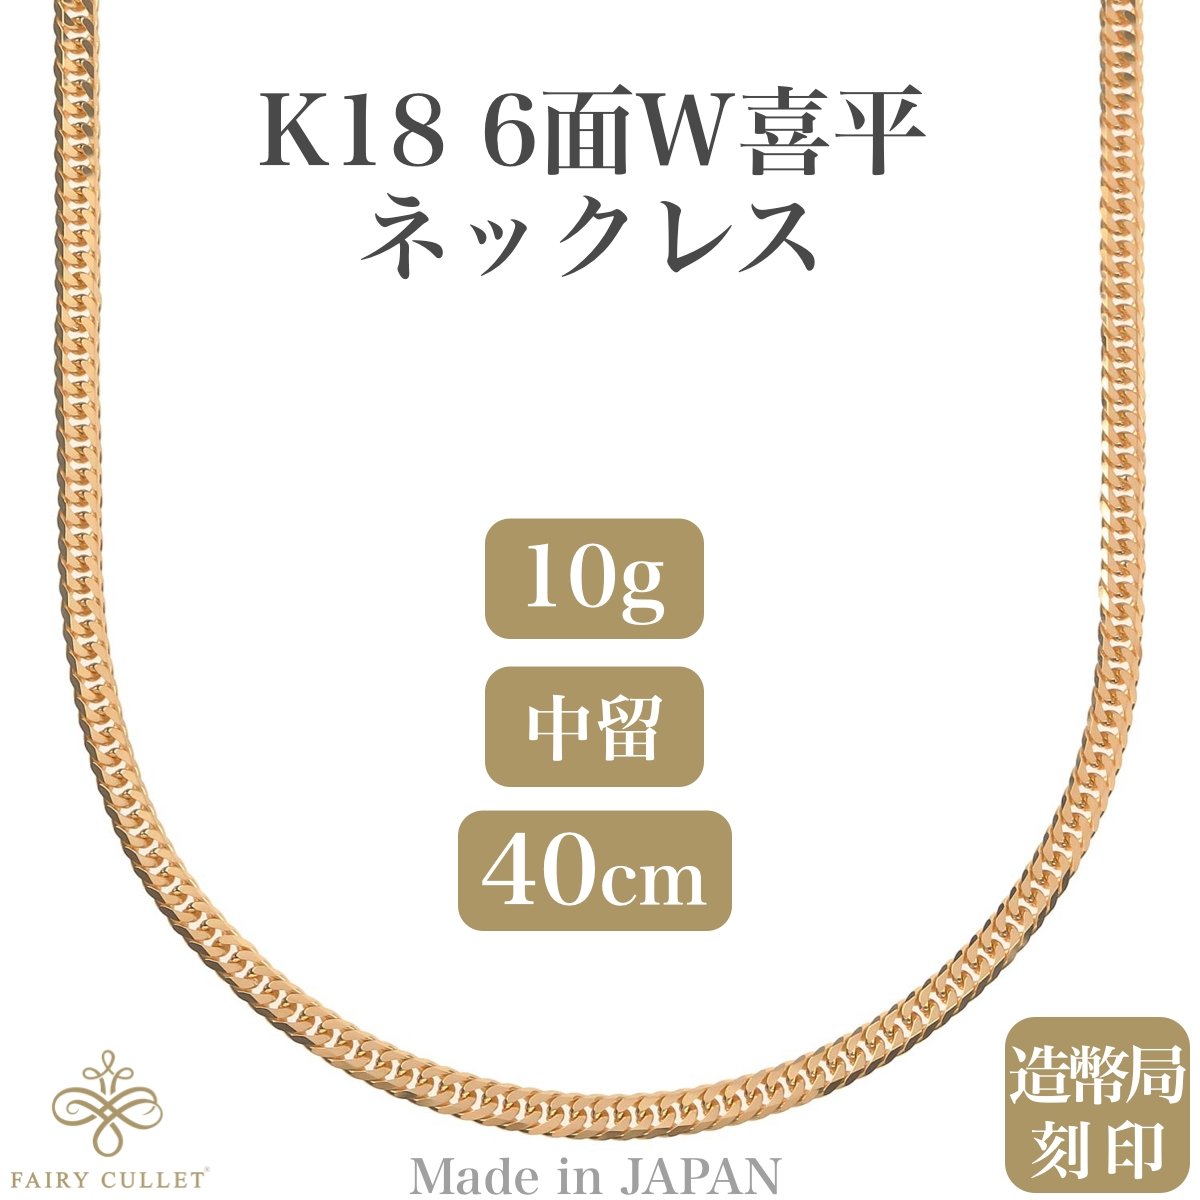 18金ネックレス K18 6面Wチェーン 日本製 約10g 40cm 中留め - 喜平